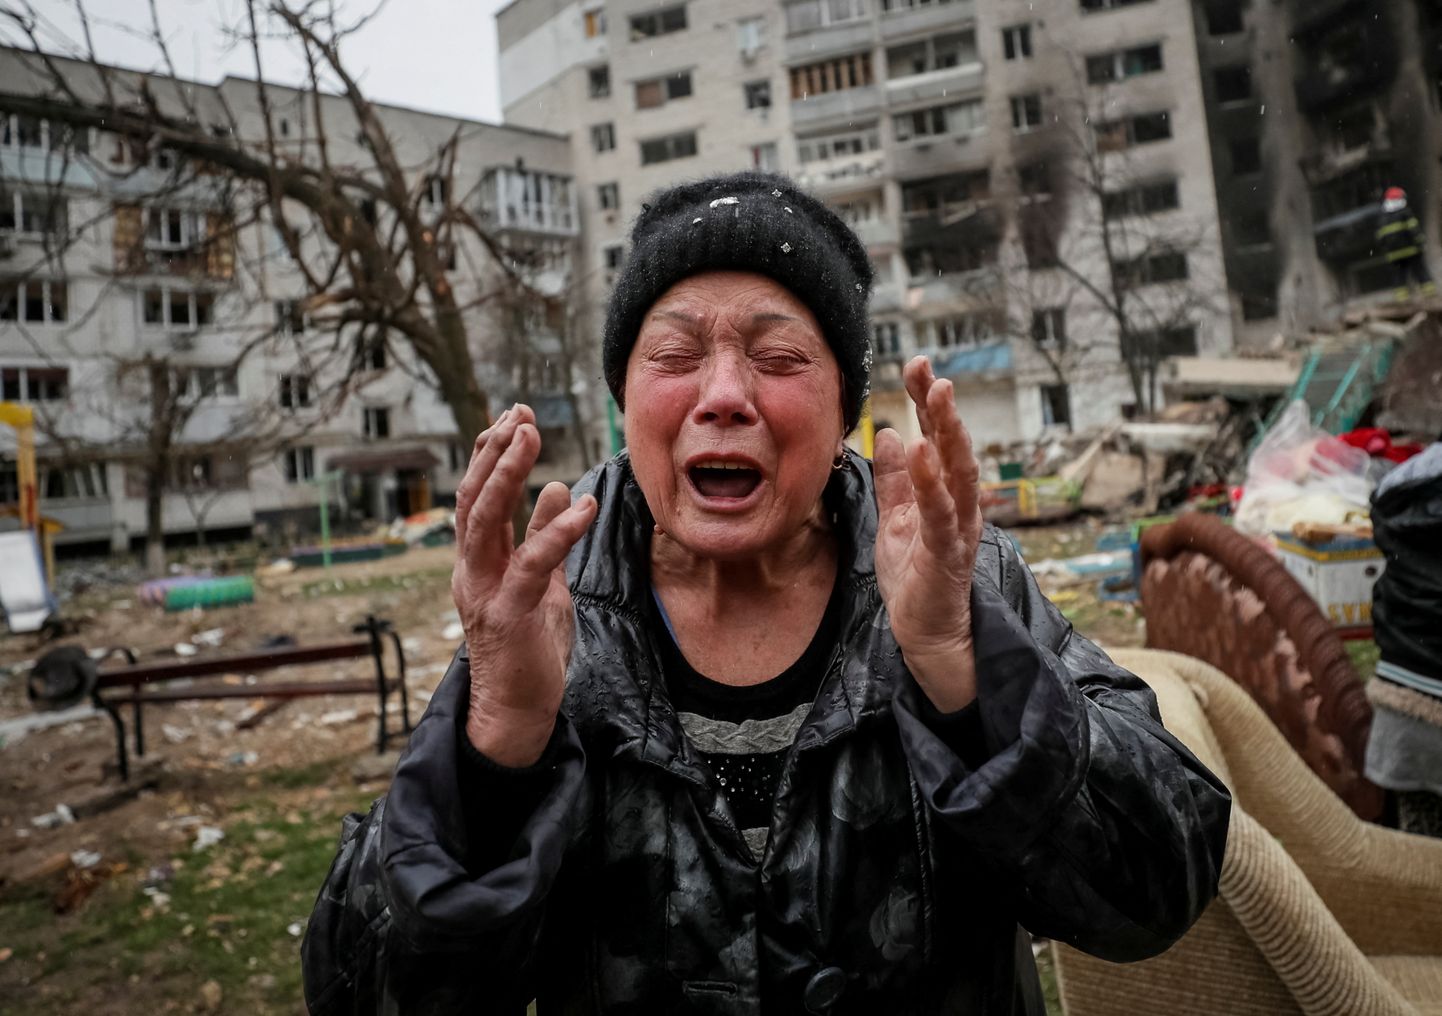 Naine, kelle tütar ja väimees said Venemaa pommitamise tagajärjel surma. Pilt on illustreeriv.